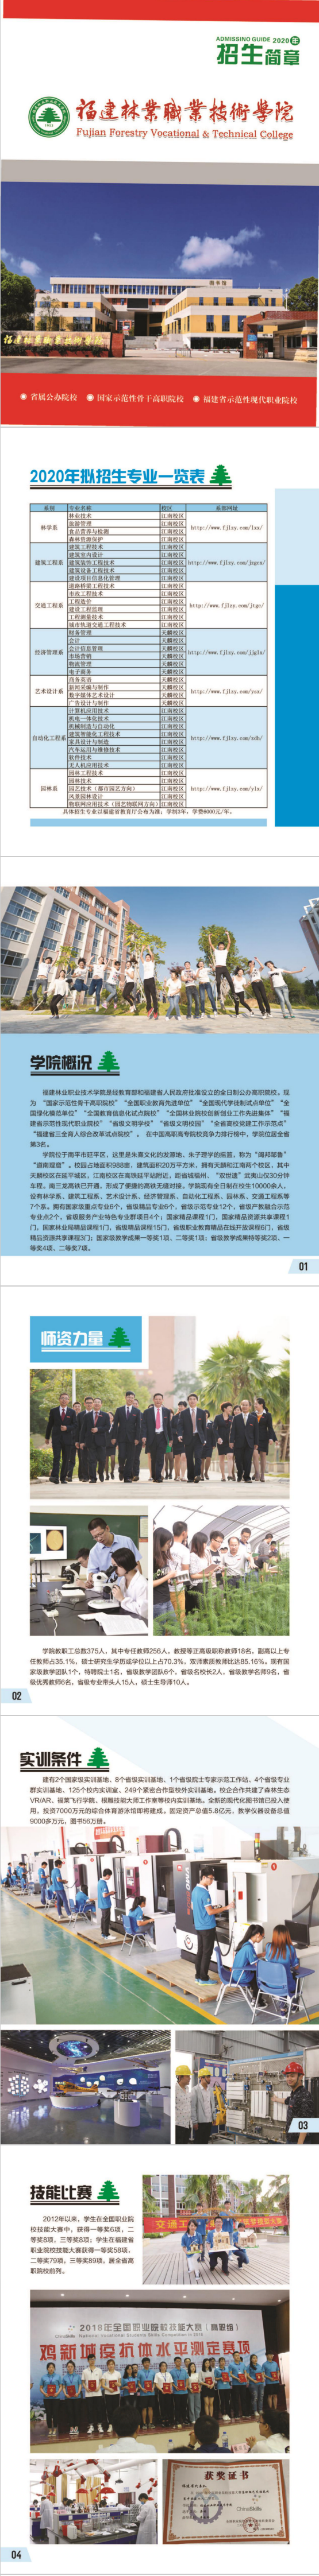 福建林业职业技术学院2020年招生简章